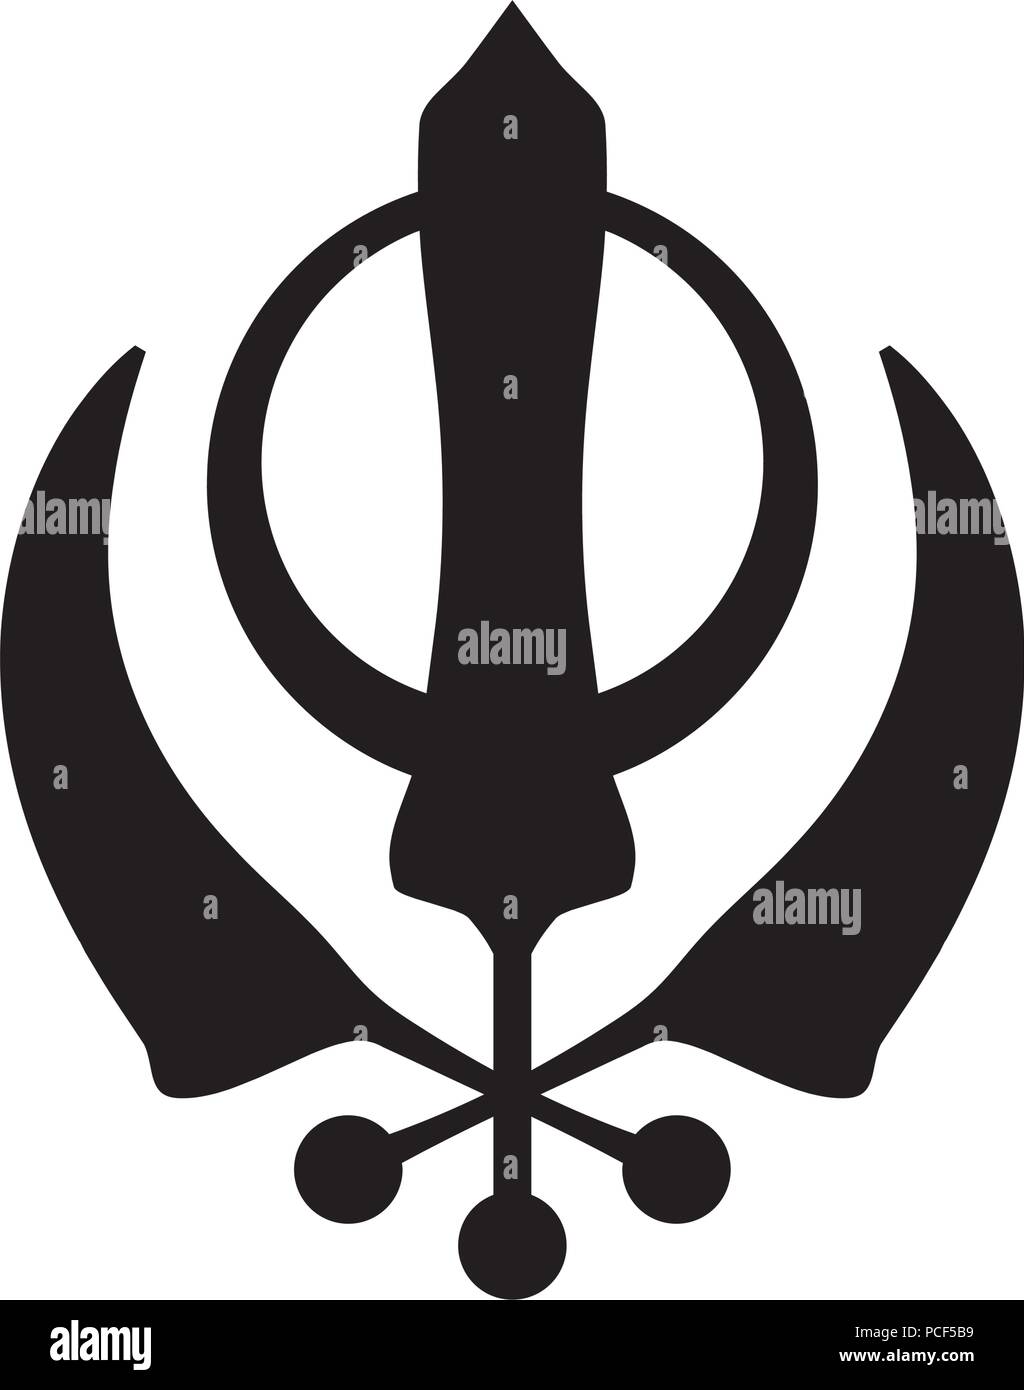 Kirpans - trois épées de cérémonie incurvé, symbole de la religion Sikhi. Sacré Oriental (symbole religieux). Illustration de Vecteur